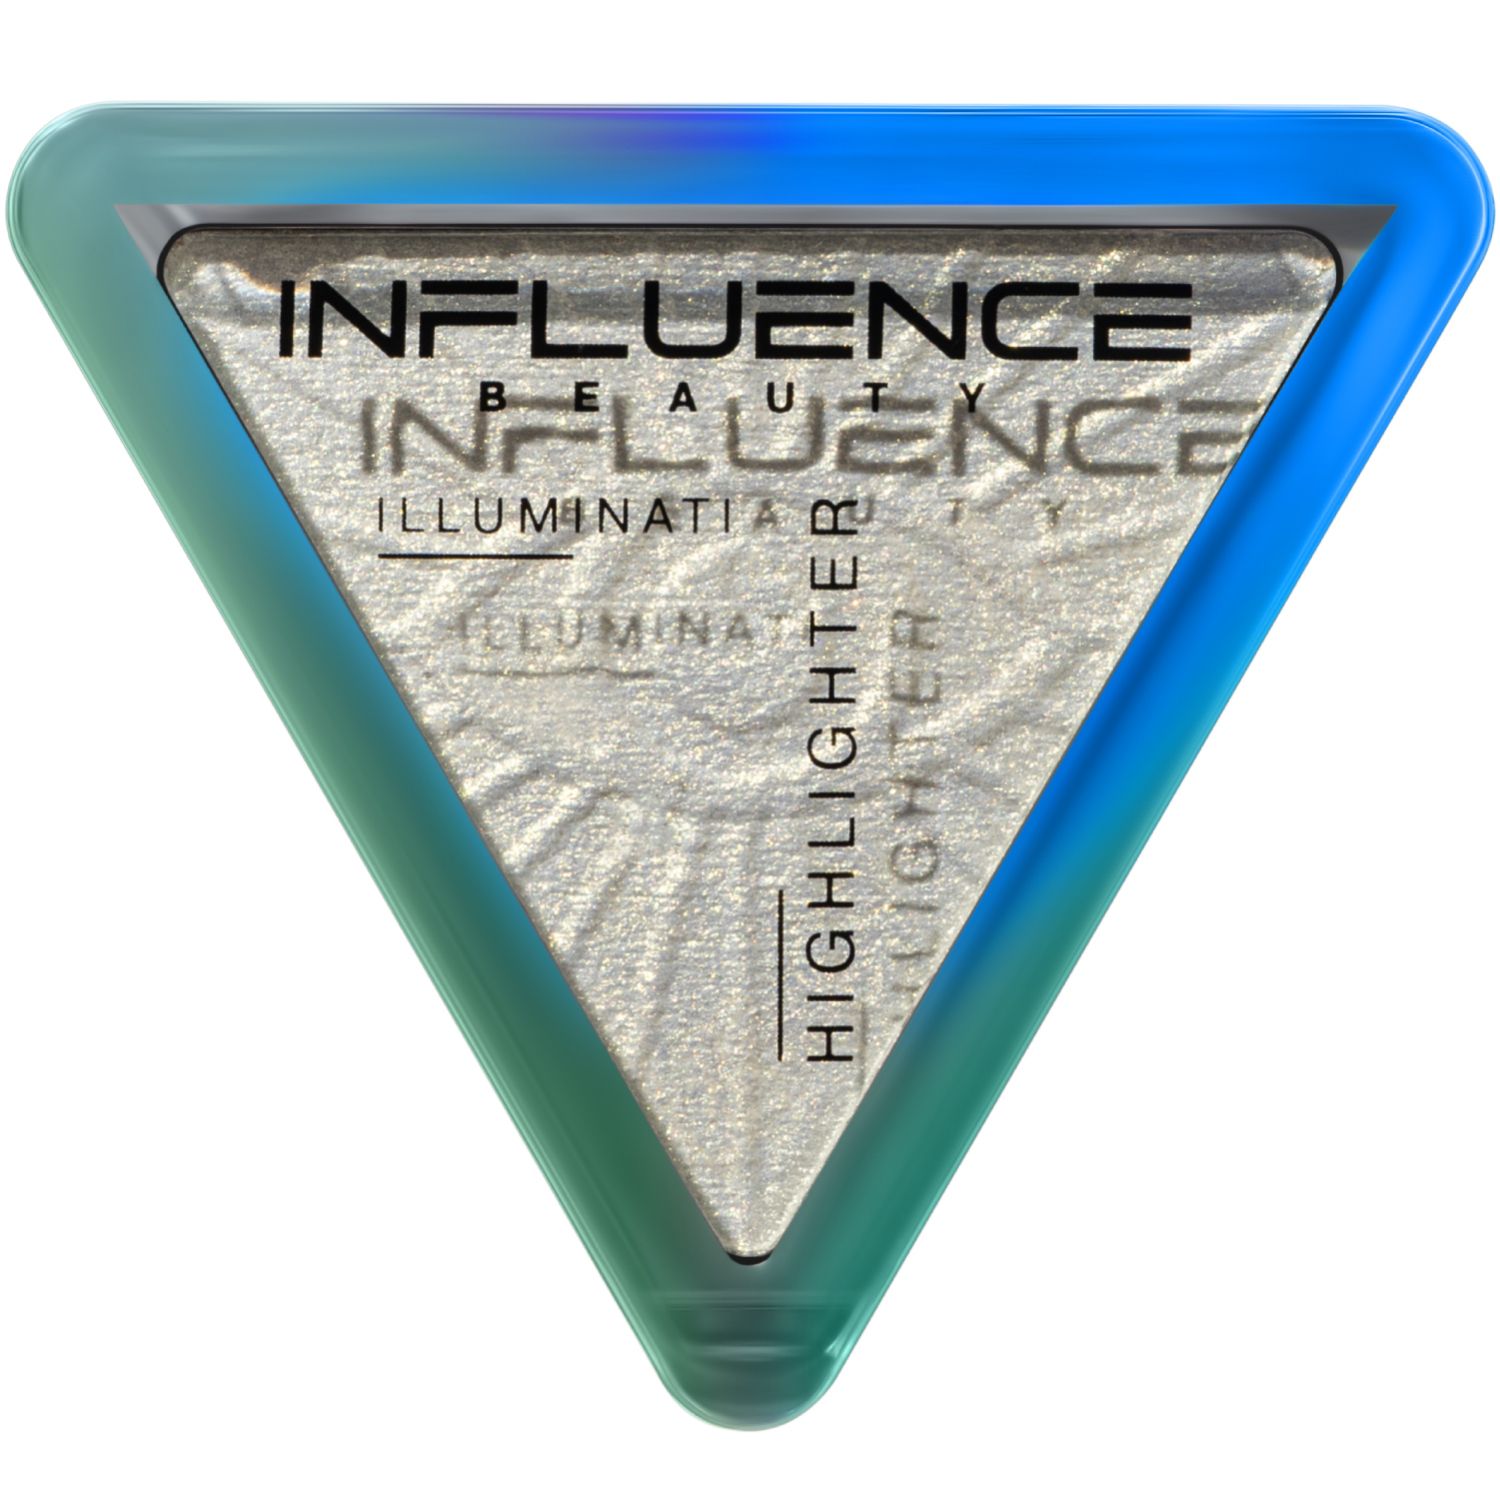 Хайлайтер Influence Beauty Illuminati с эффектом влажного сияния, тон 03 голубой, 6,5 г хайлайтер influence beauty illuminati с эффектом влажного сияния тон 02 розовый 6 5 г